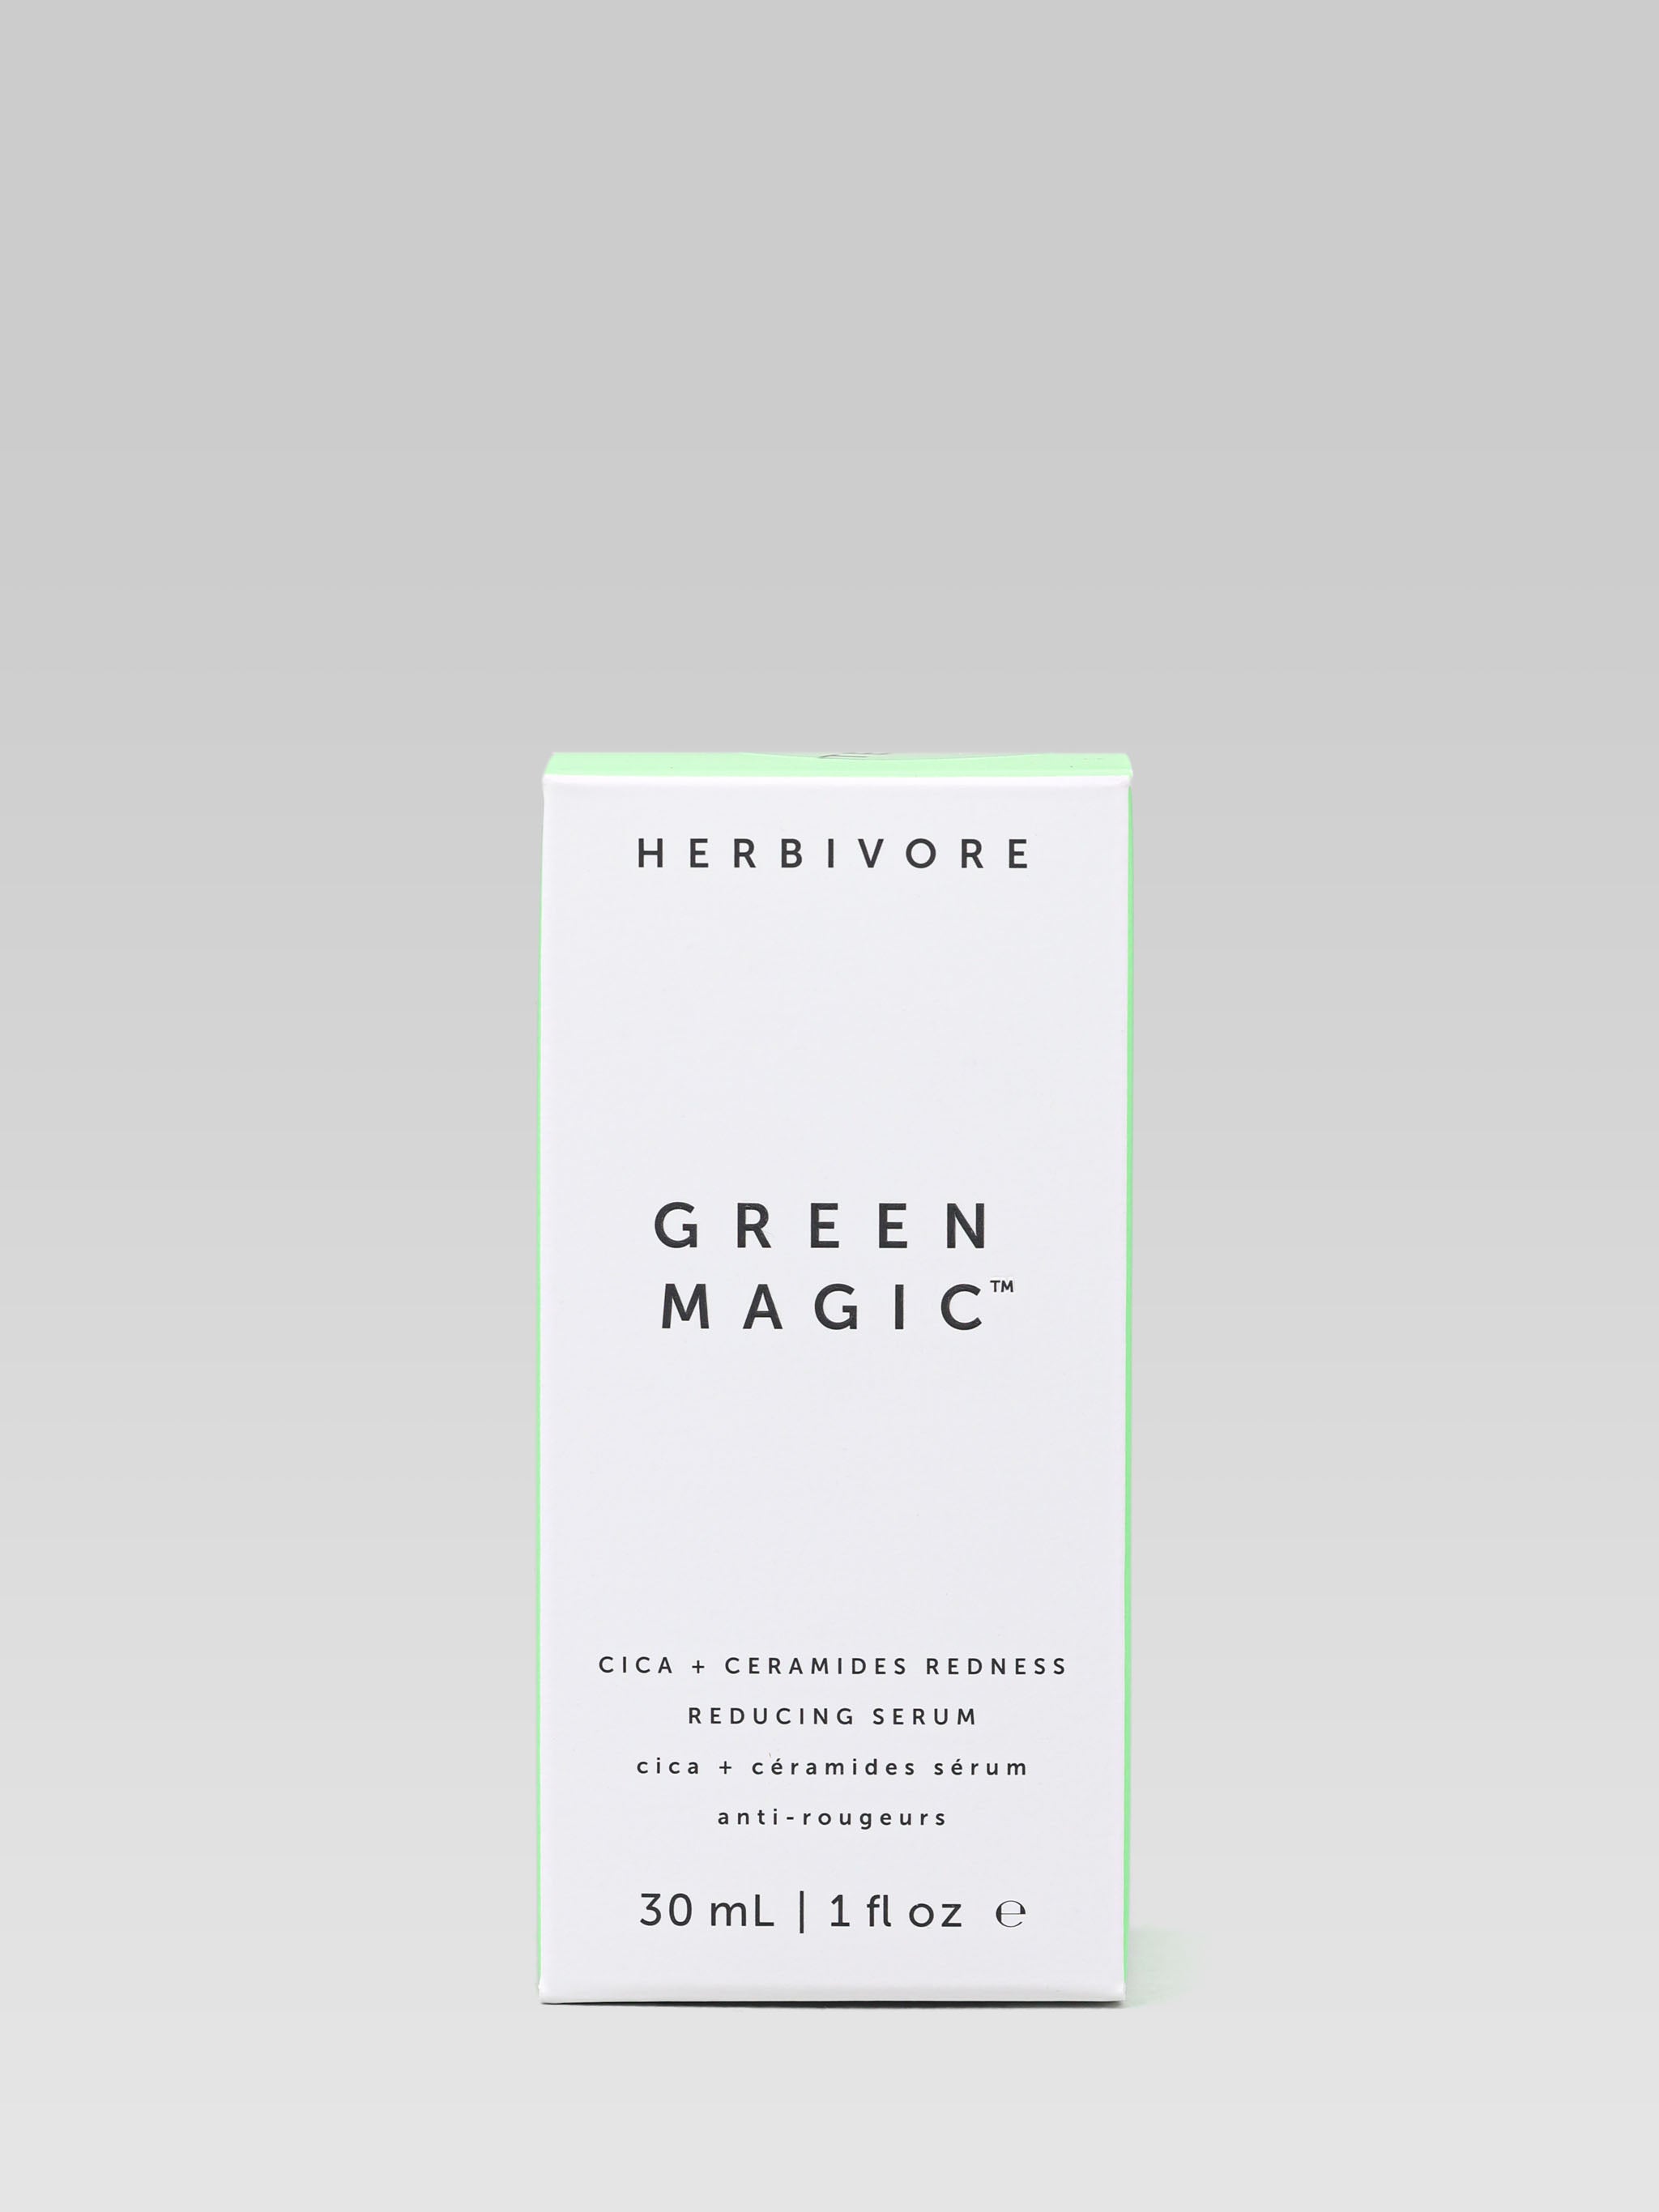 Herbivore Green Magic packaging